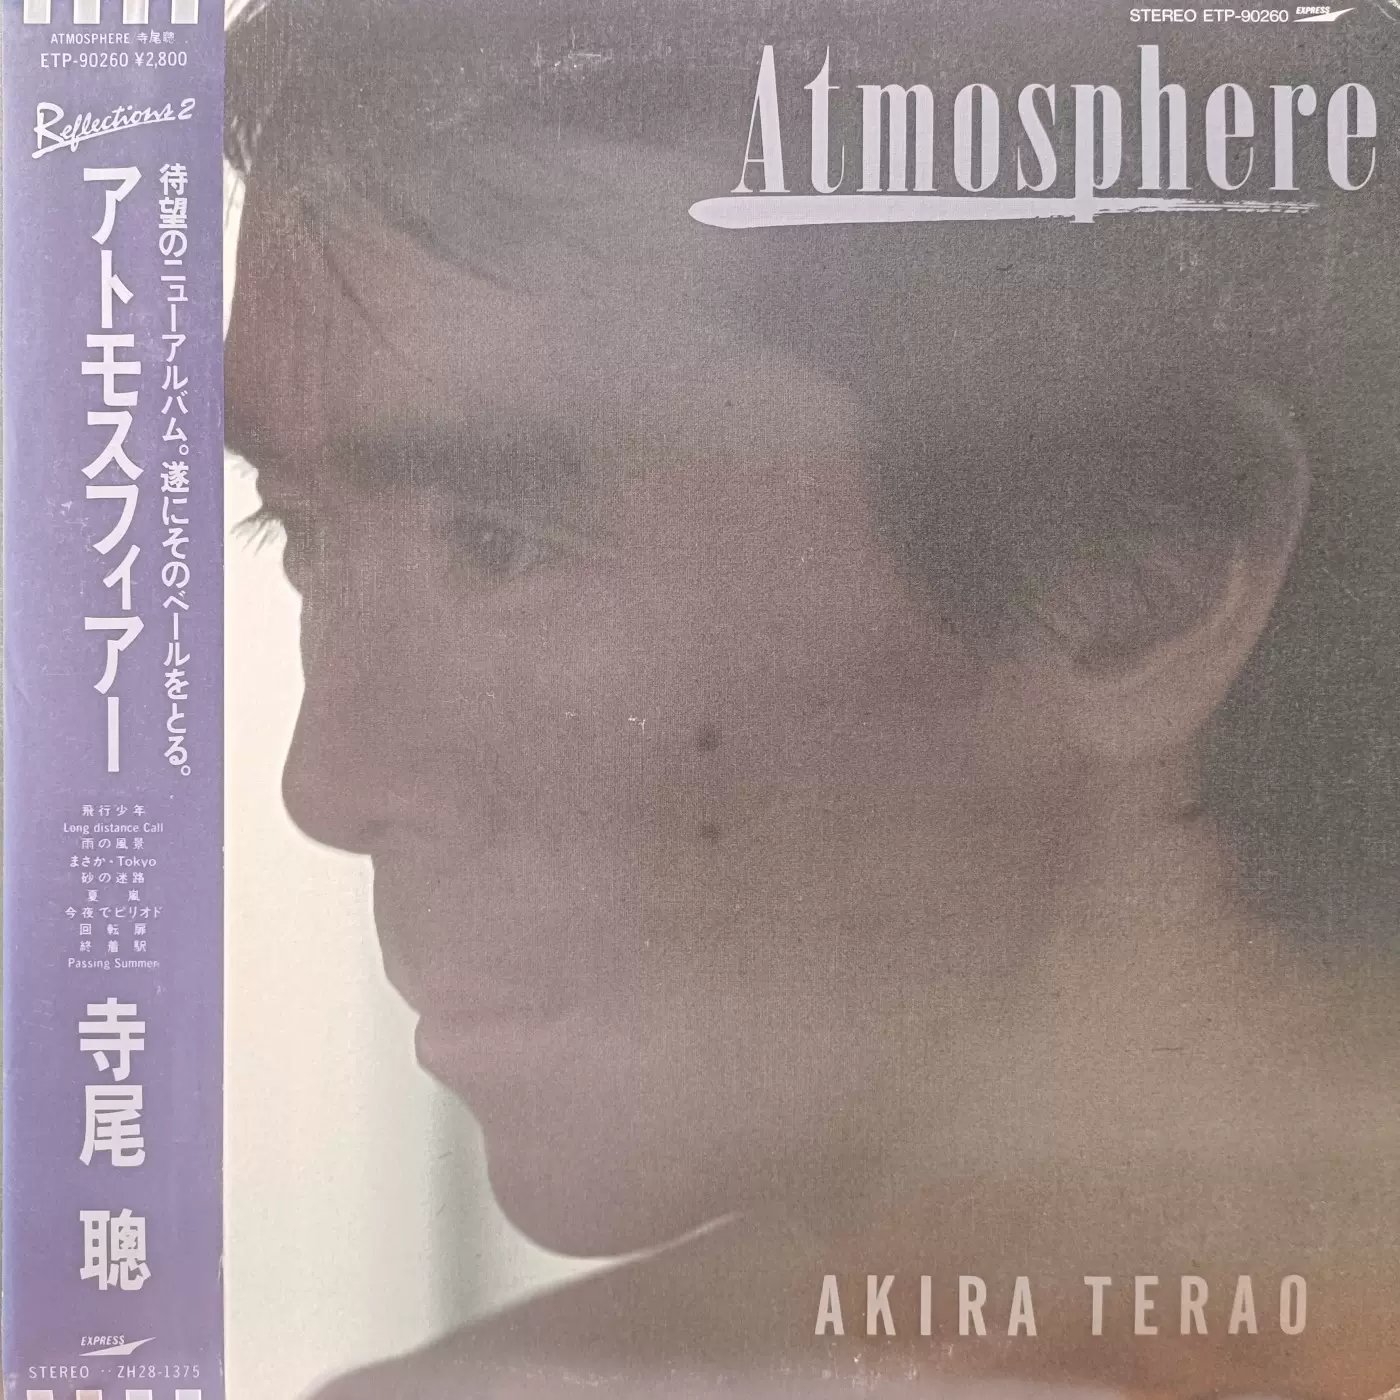 寺尾聰 写真集「Atmoshere」1983年 初版 シンコーミュージック 